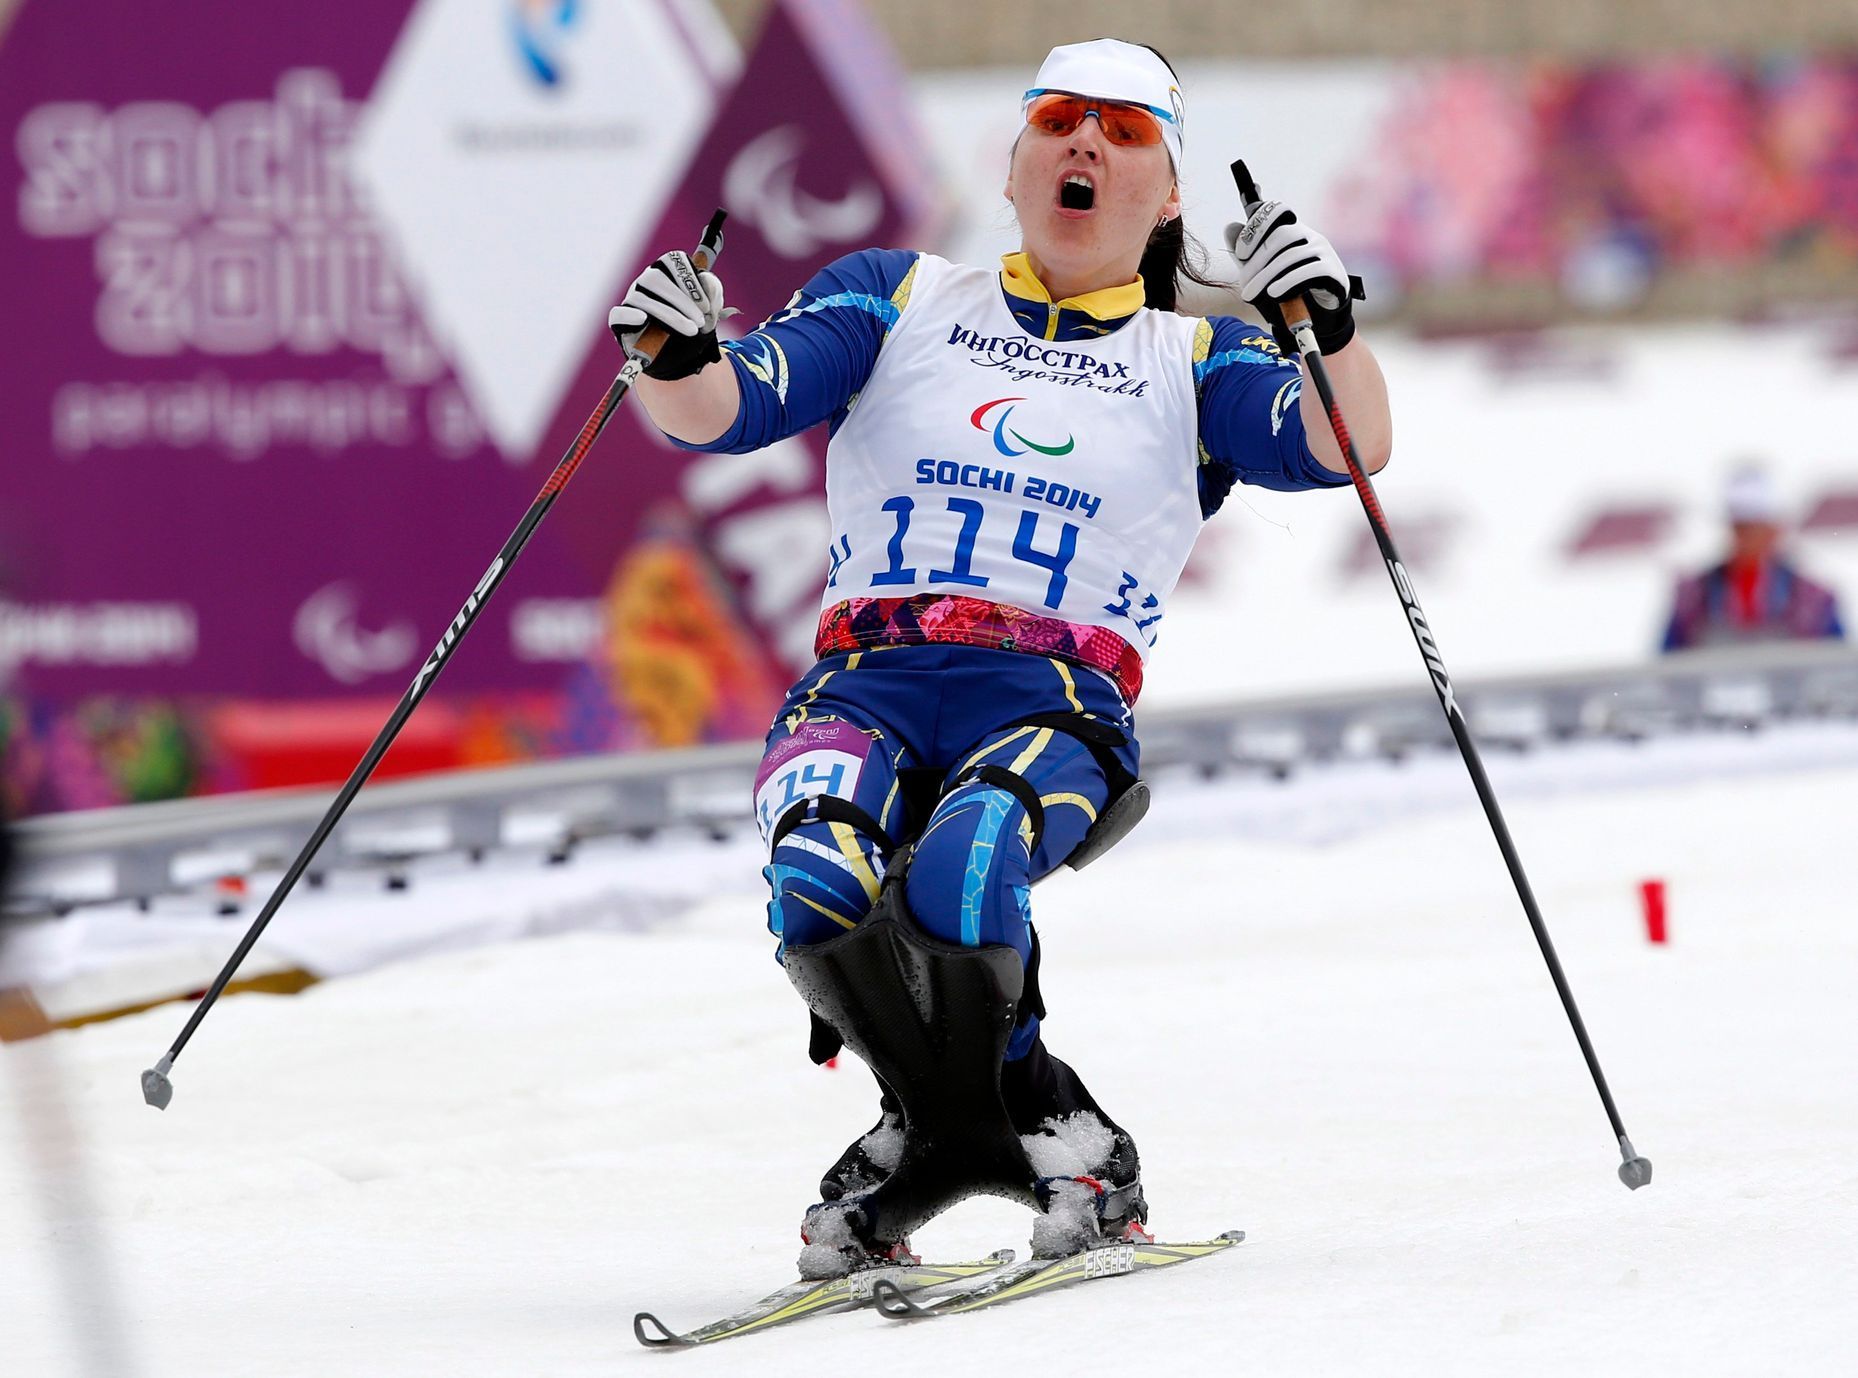 Paralympiáda Soči 2014: Ljudmyla Pavlenková